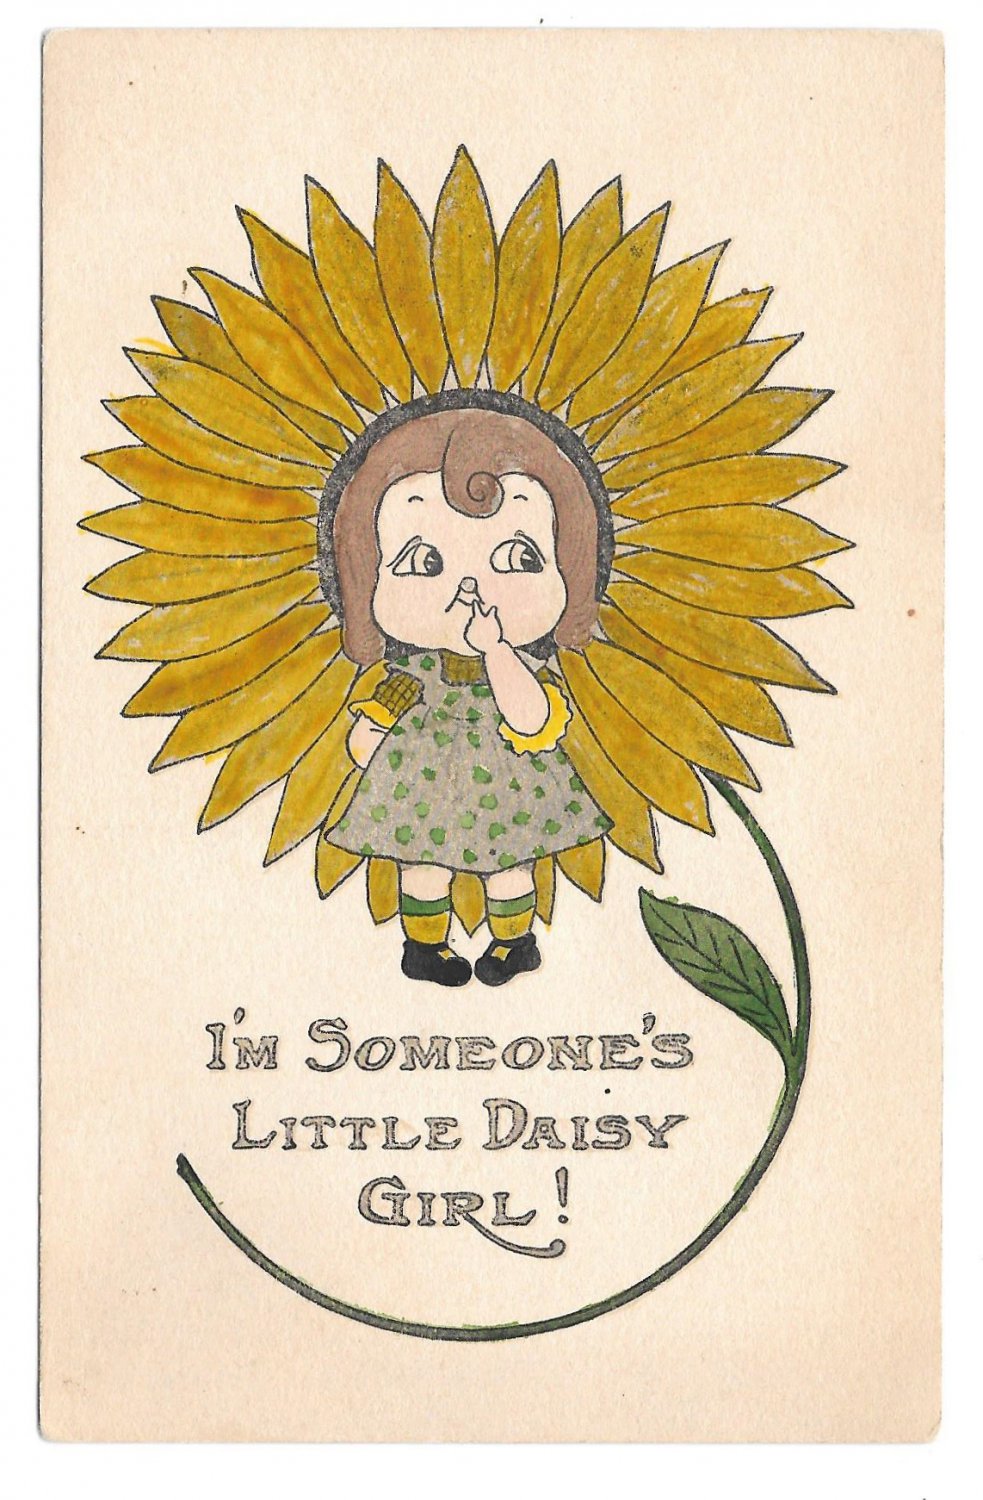 Leak littledaisy Little Daisy